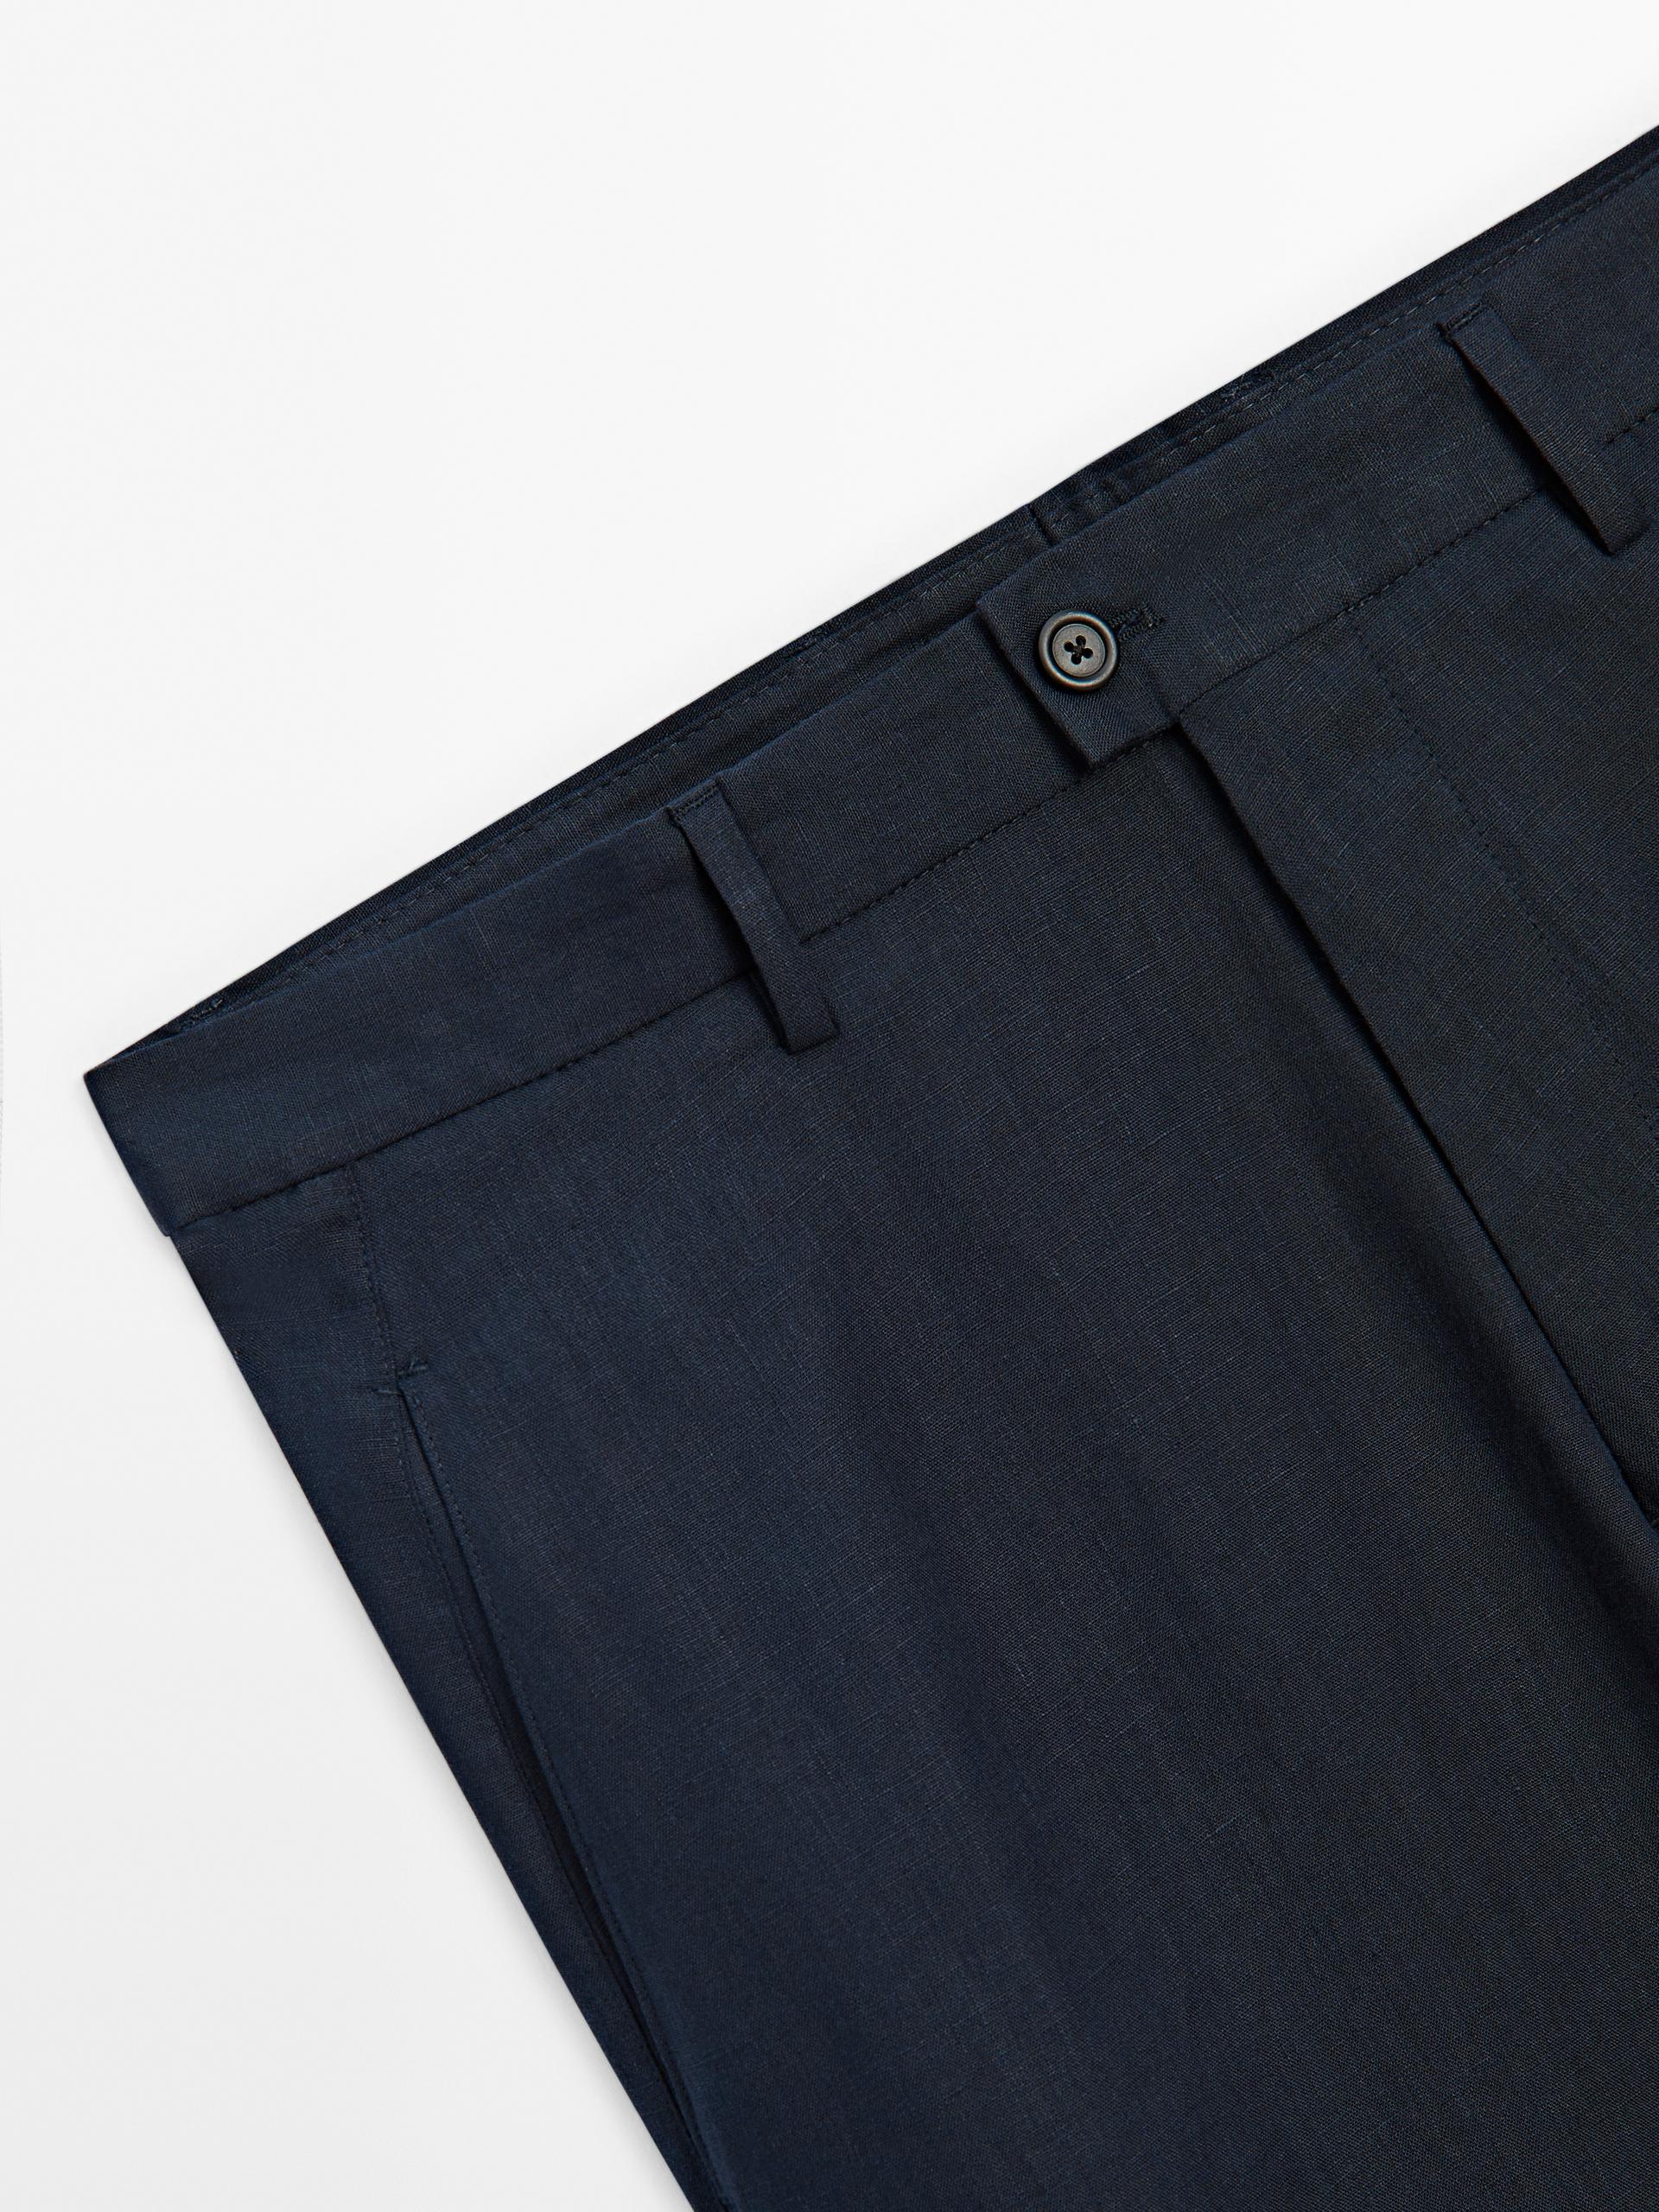 100% linen suit trousers - Navy blue